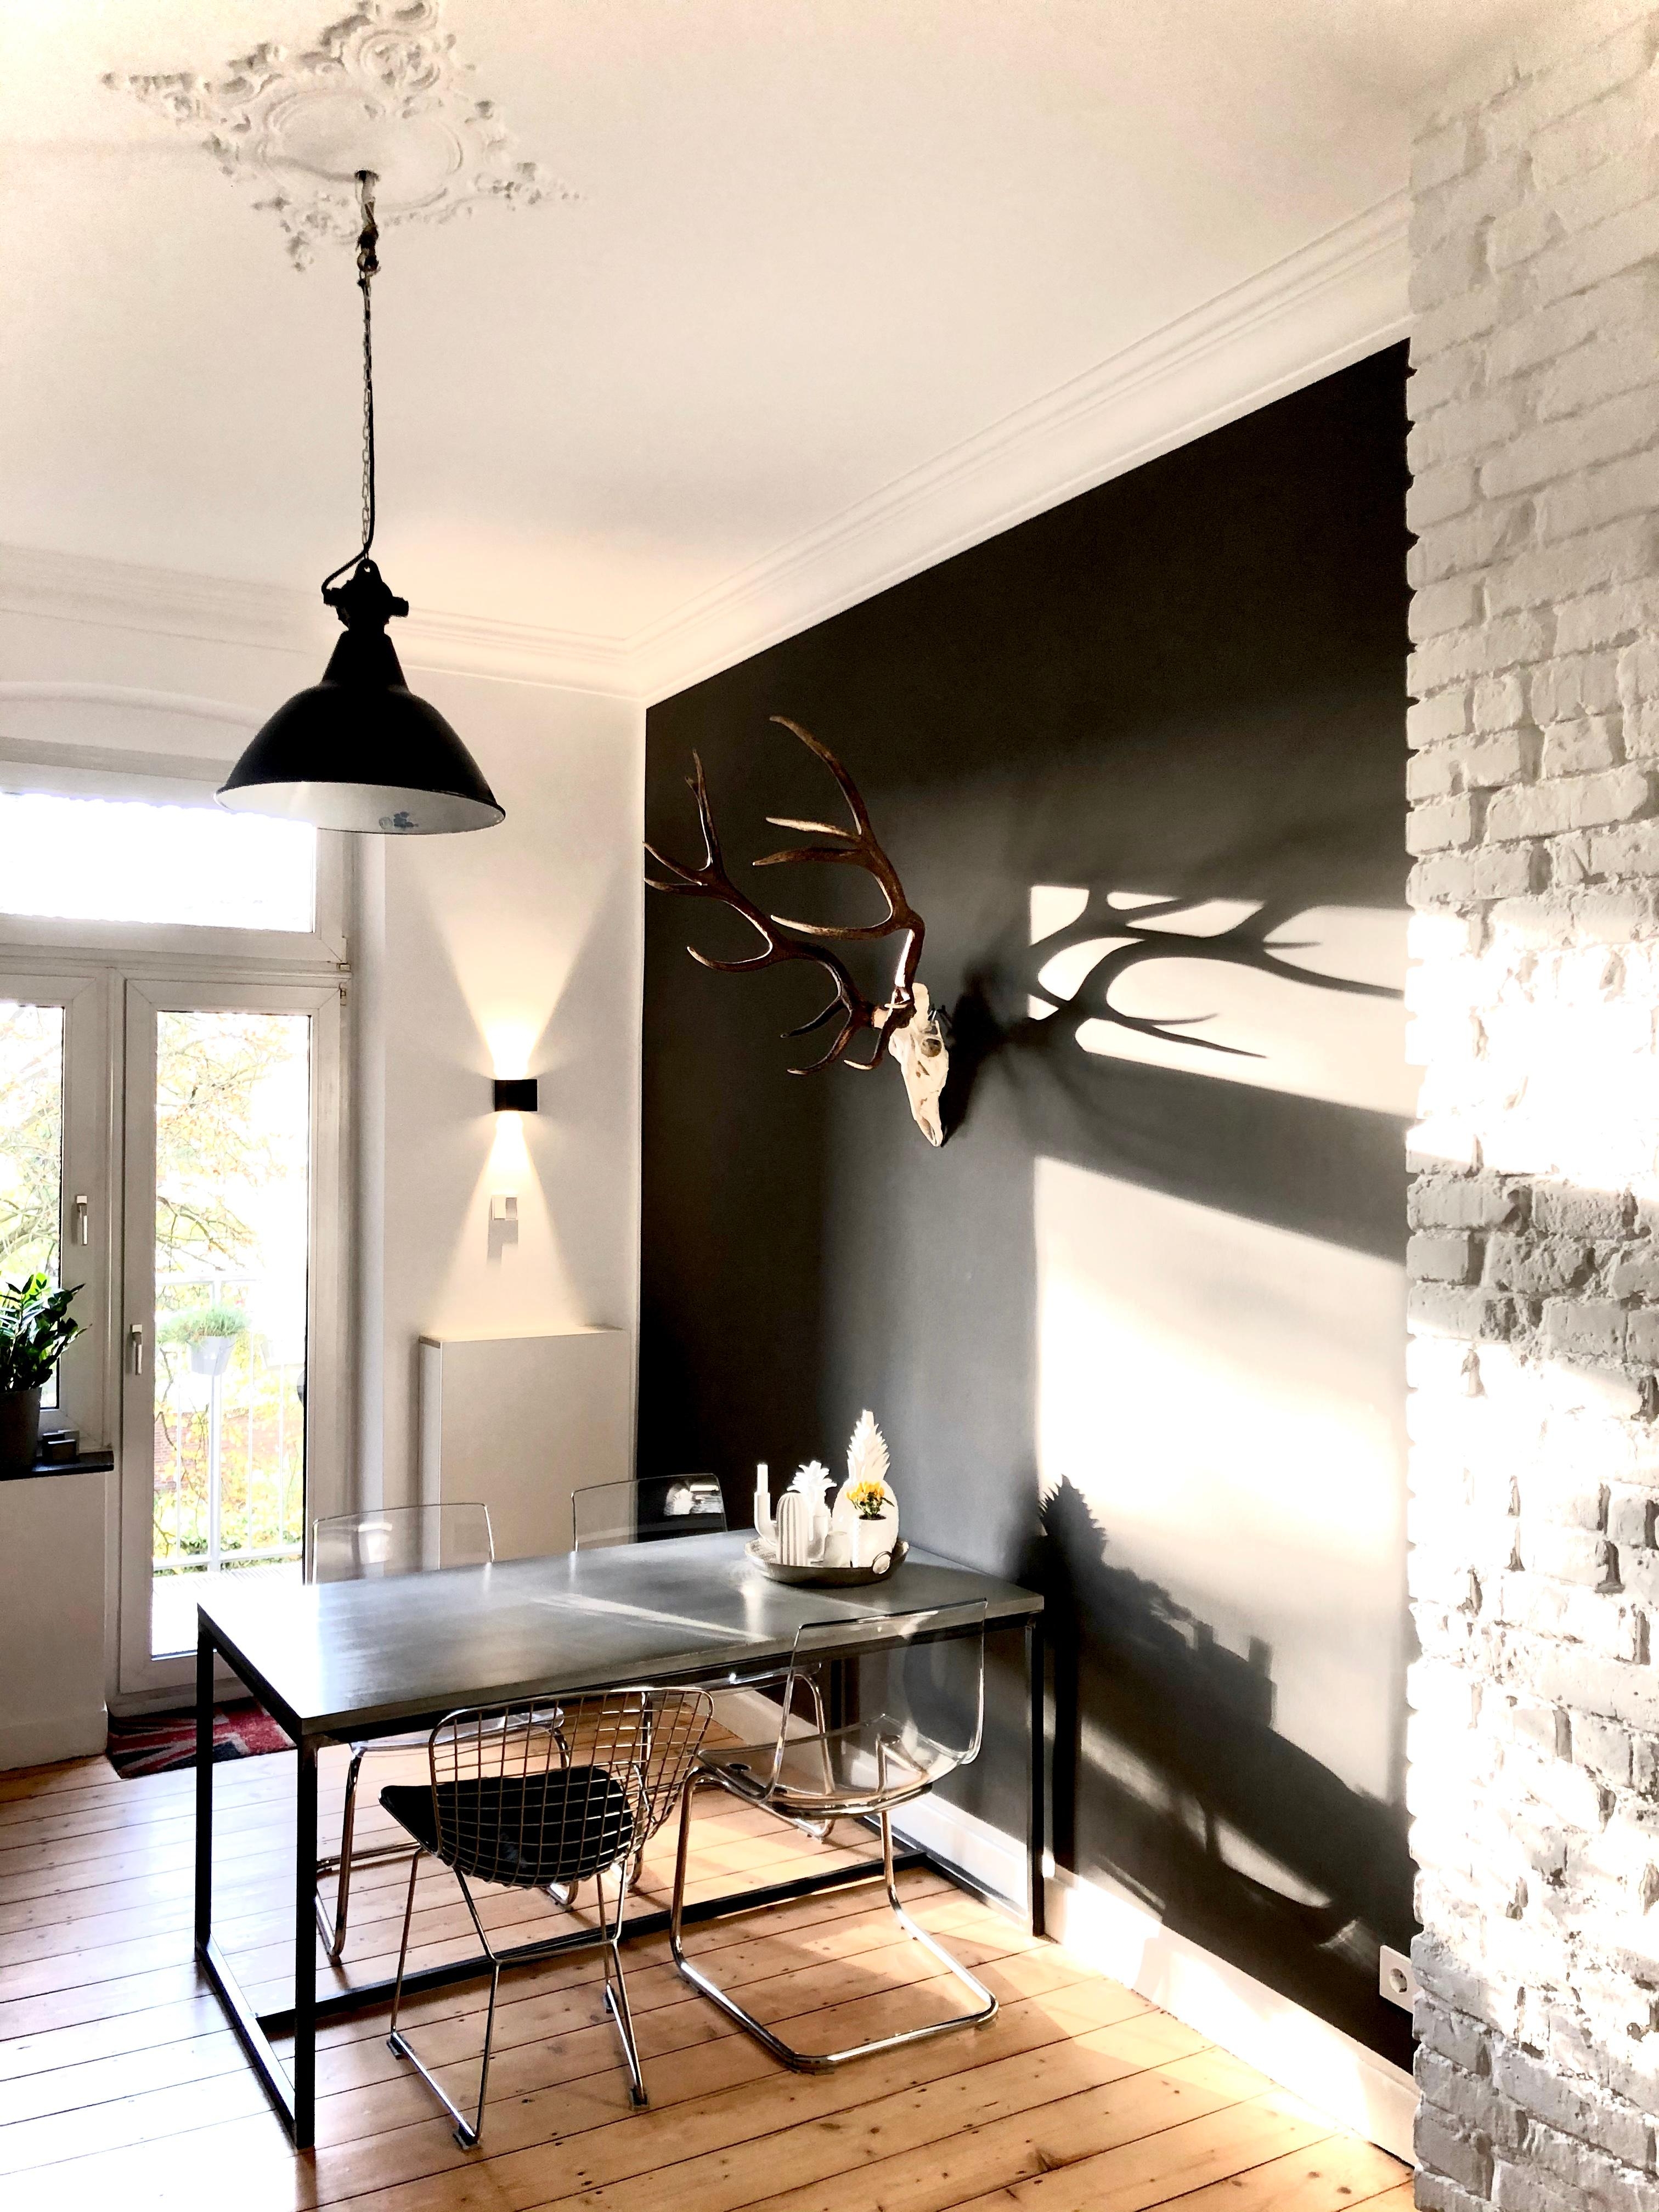 Happy Friyay mit etwas Sonne 🤗 #kitchen #kueche #altbau #altbauliebe #minimalism #betontisch #minimalismus #stuck 